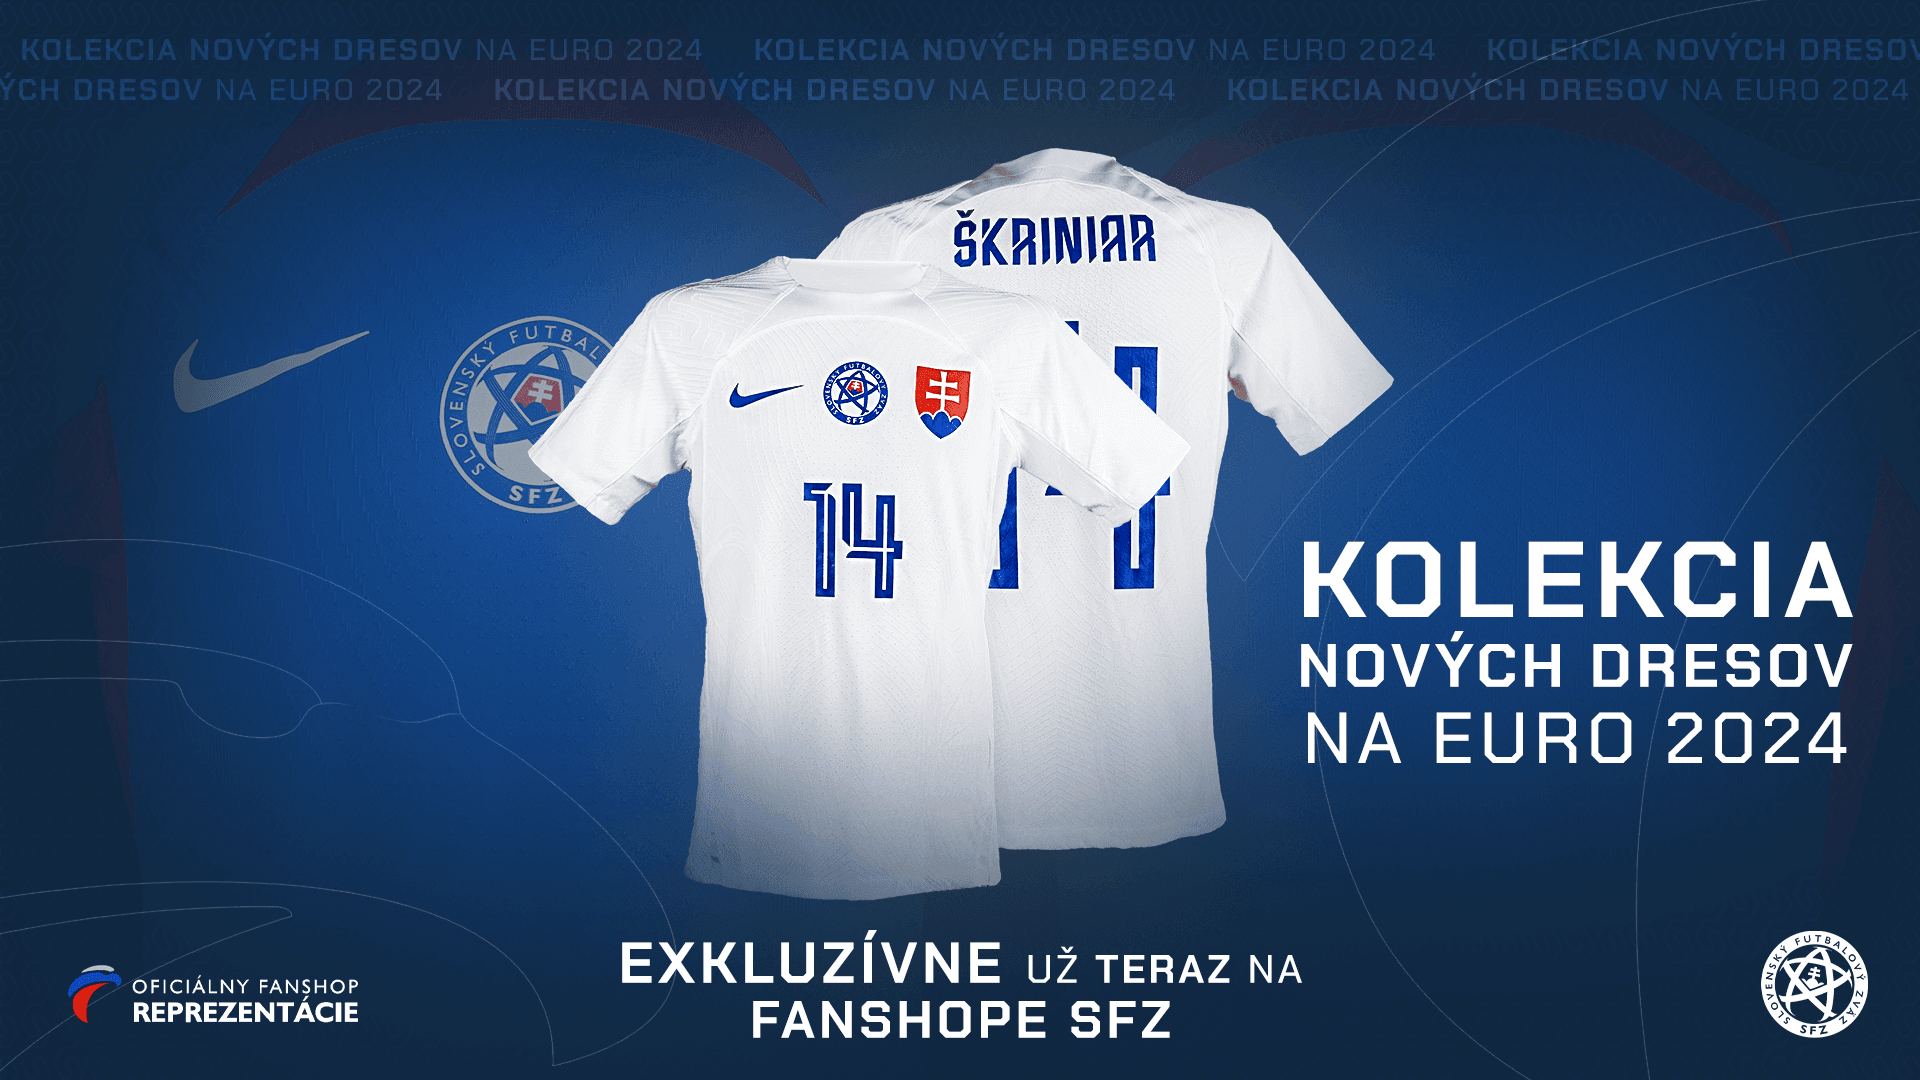 Titulný obrázok - Oficiálny fanshop Slovenského futbalového zväzu